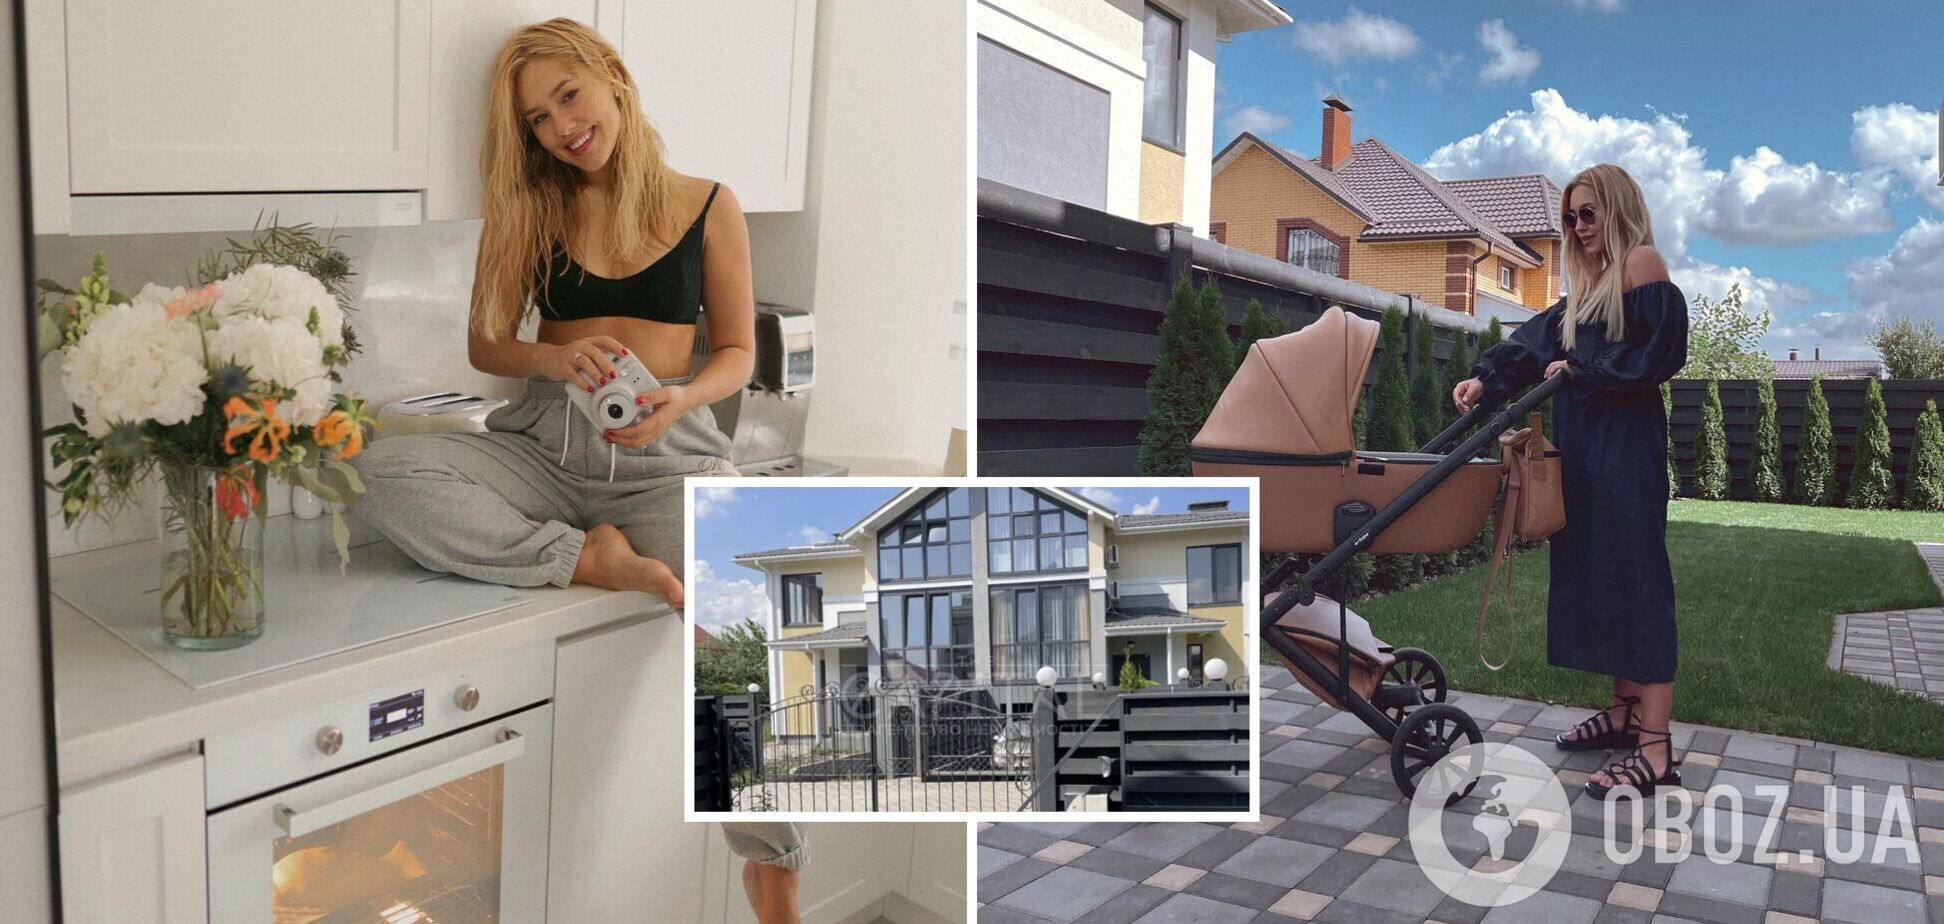 Даша Квиткова продает свой дом под Киевом за 320 тыс. долларов: объявление заметили на OLX. Фото